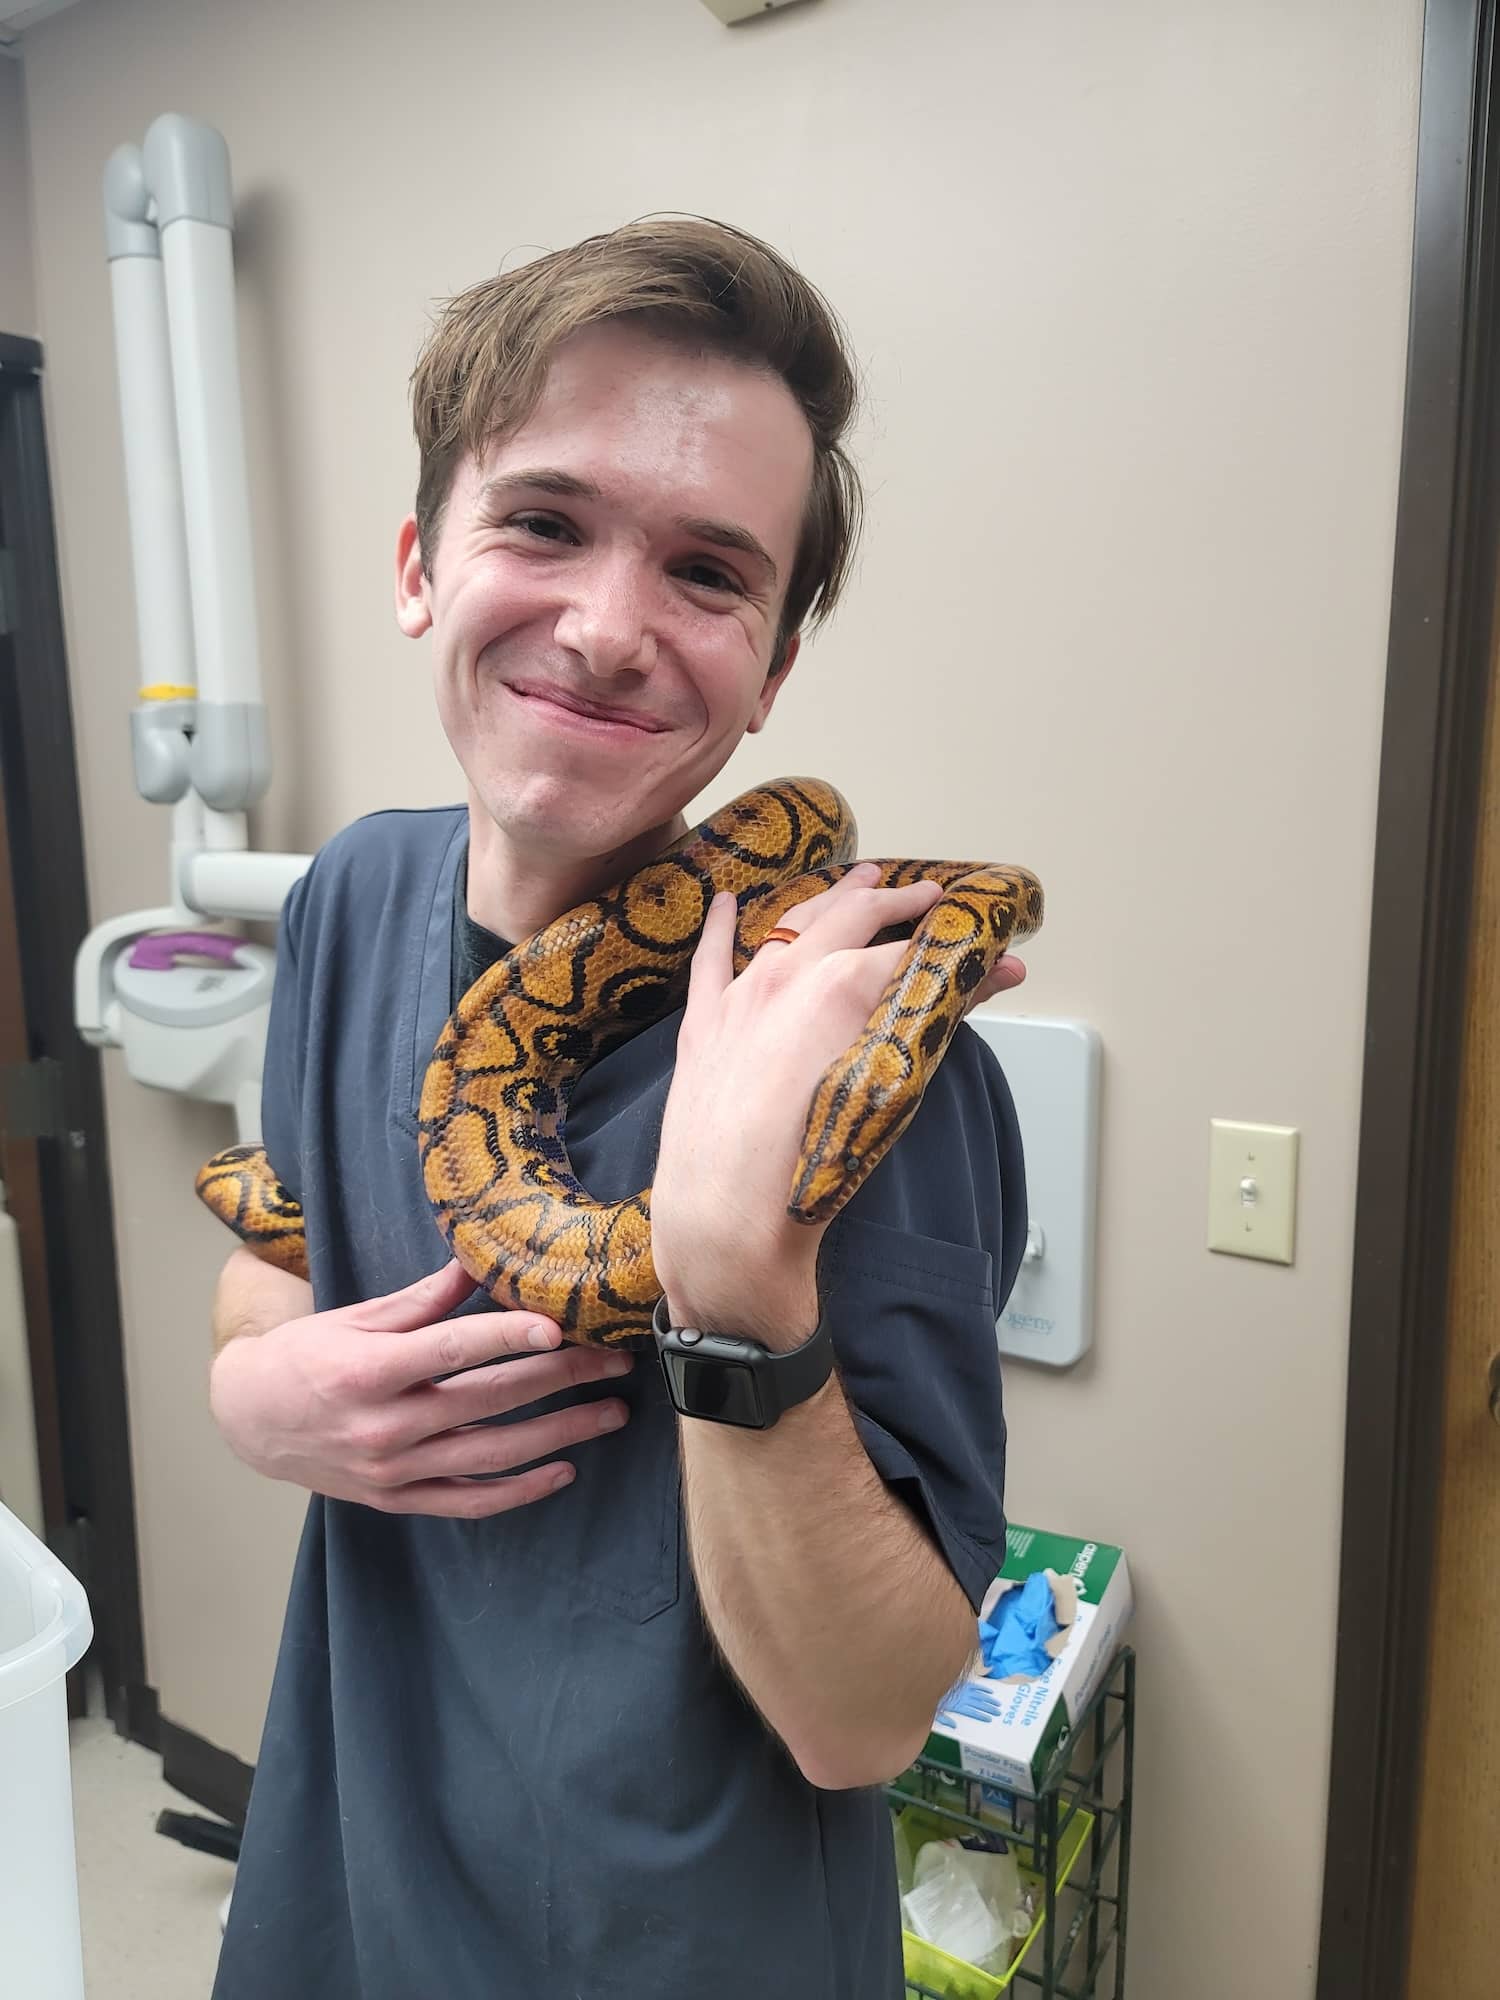 Staff member holding snake